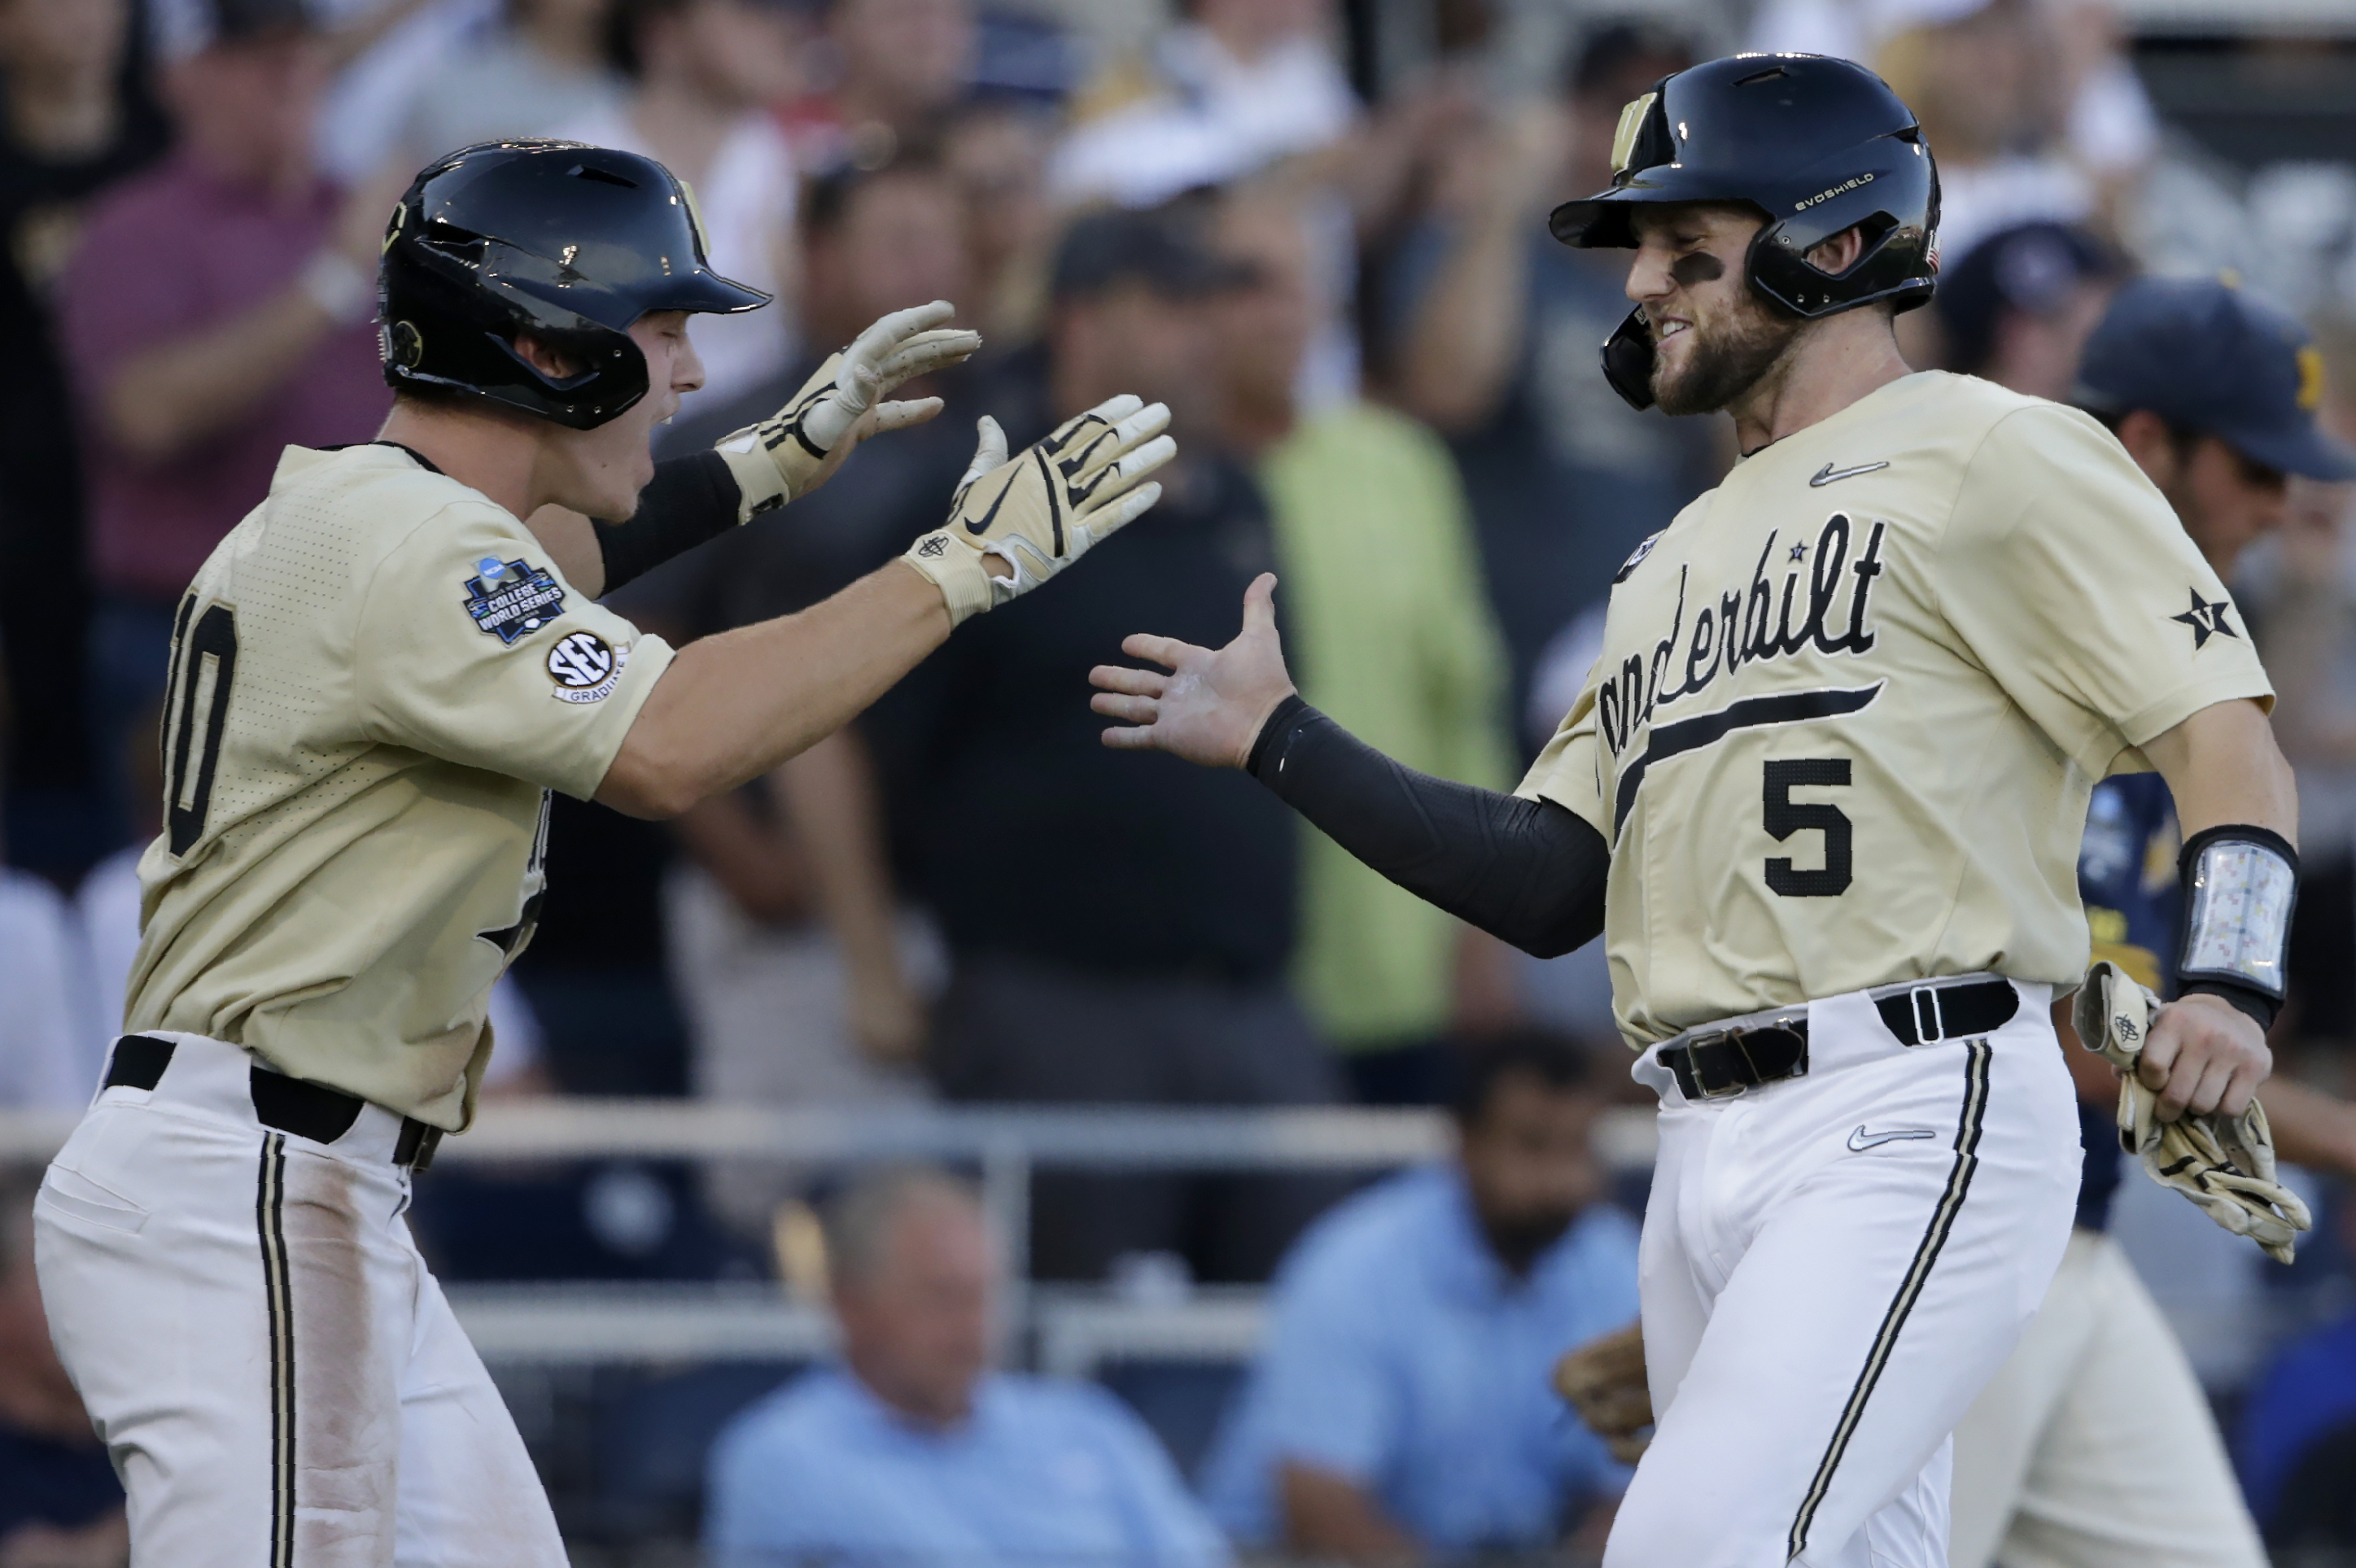 Vanderbilt wins 2019 College World Series title in three games